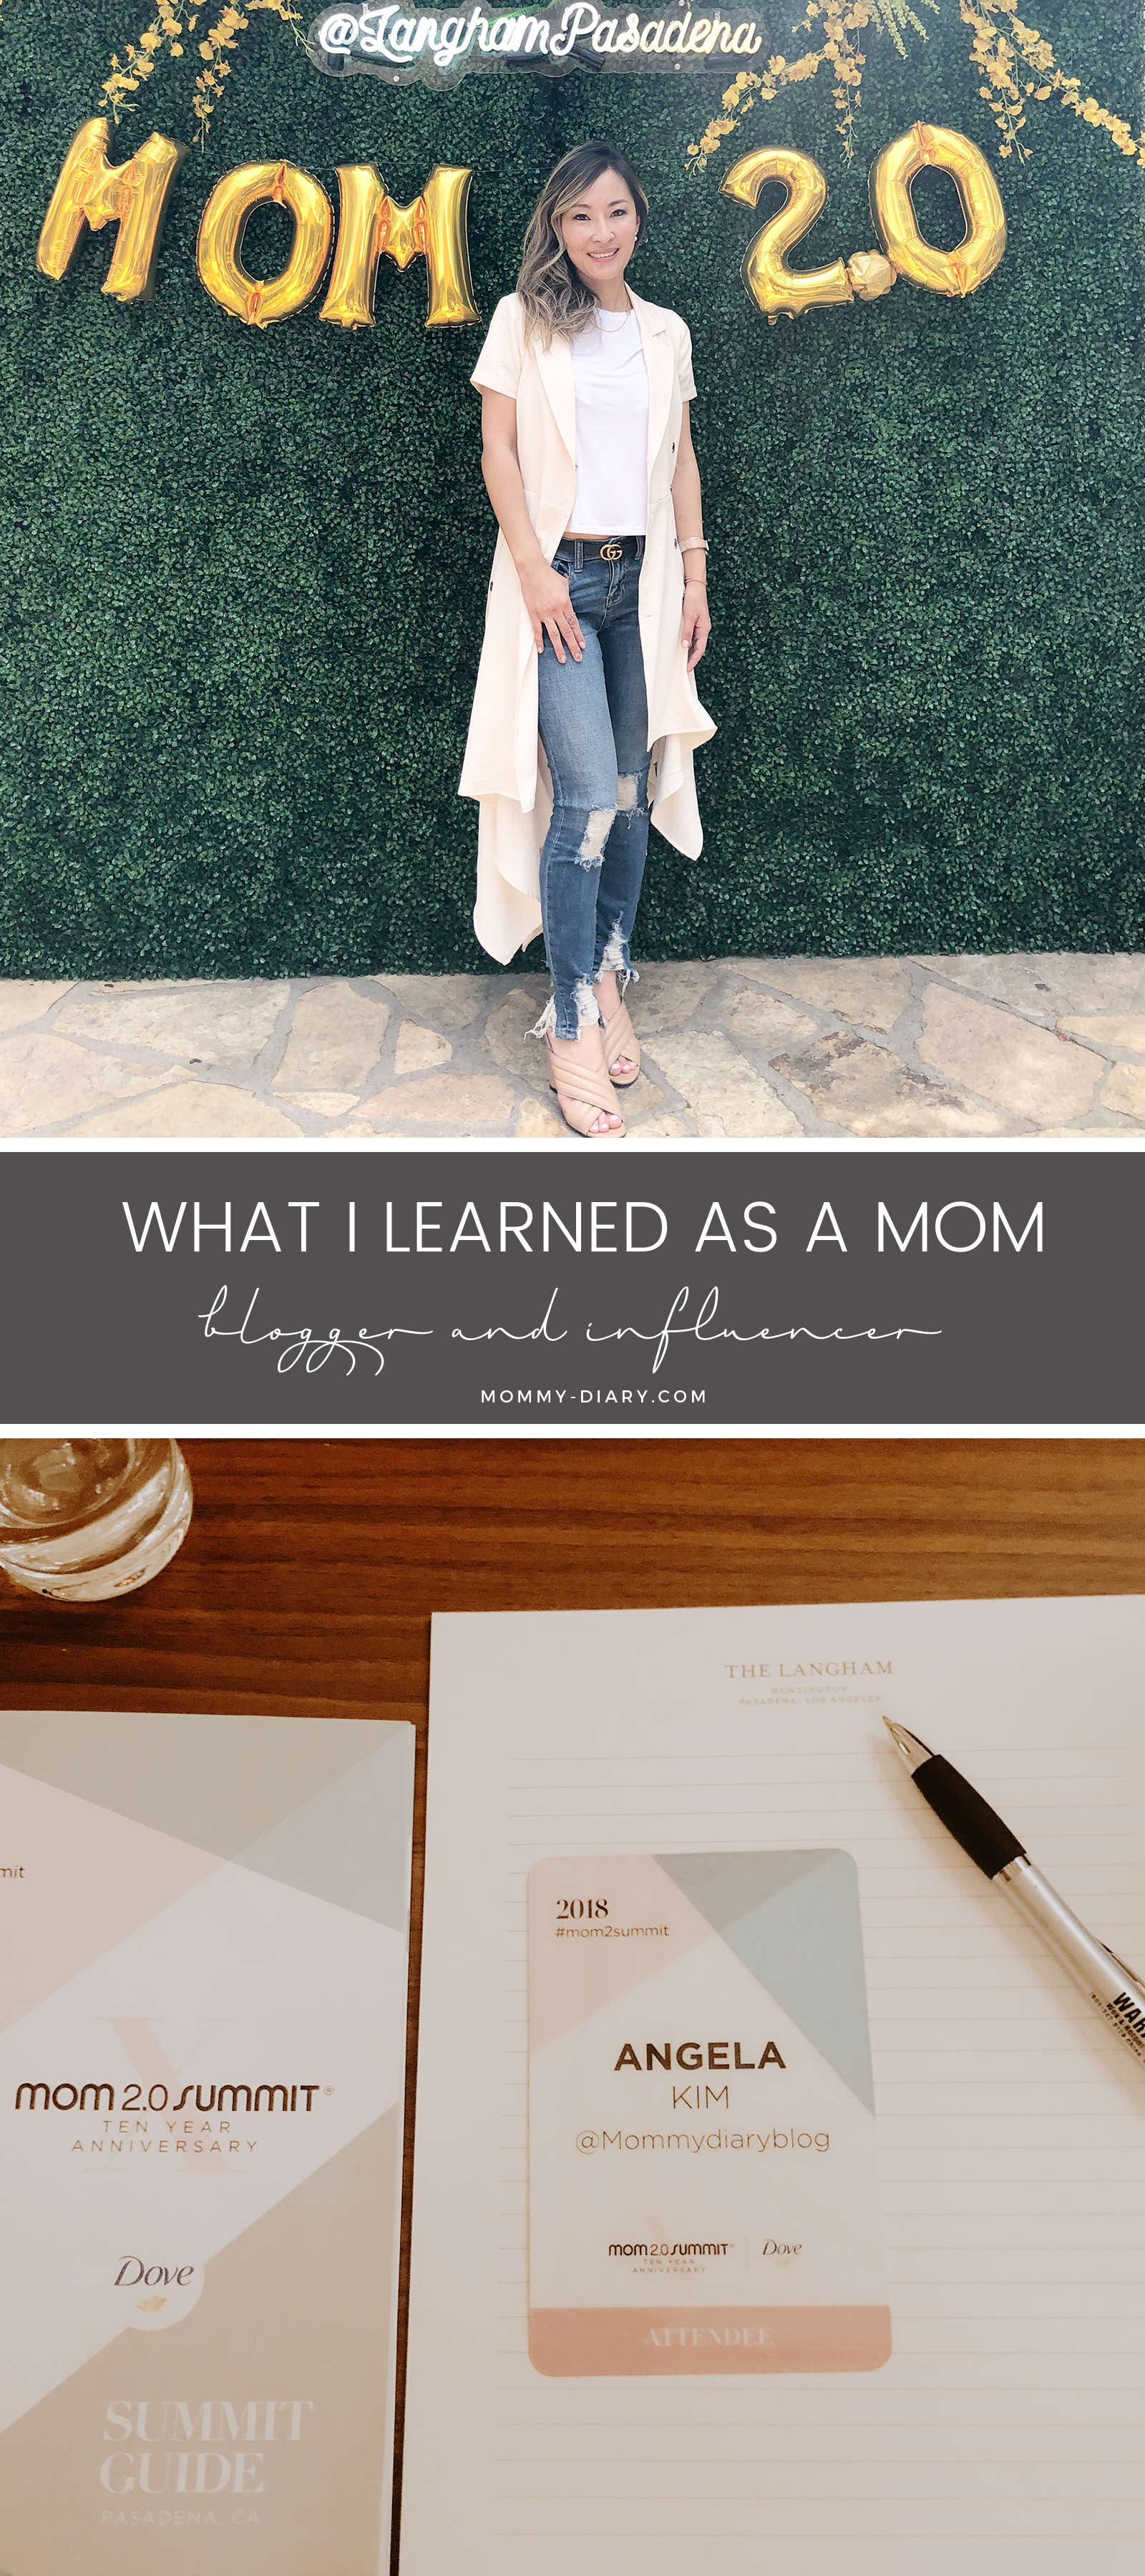 blogger-influencer-mom-pinterest